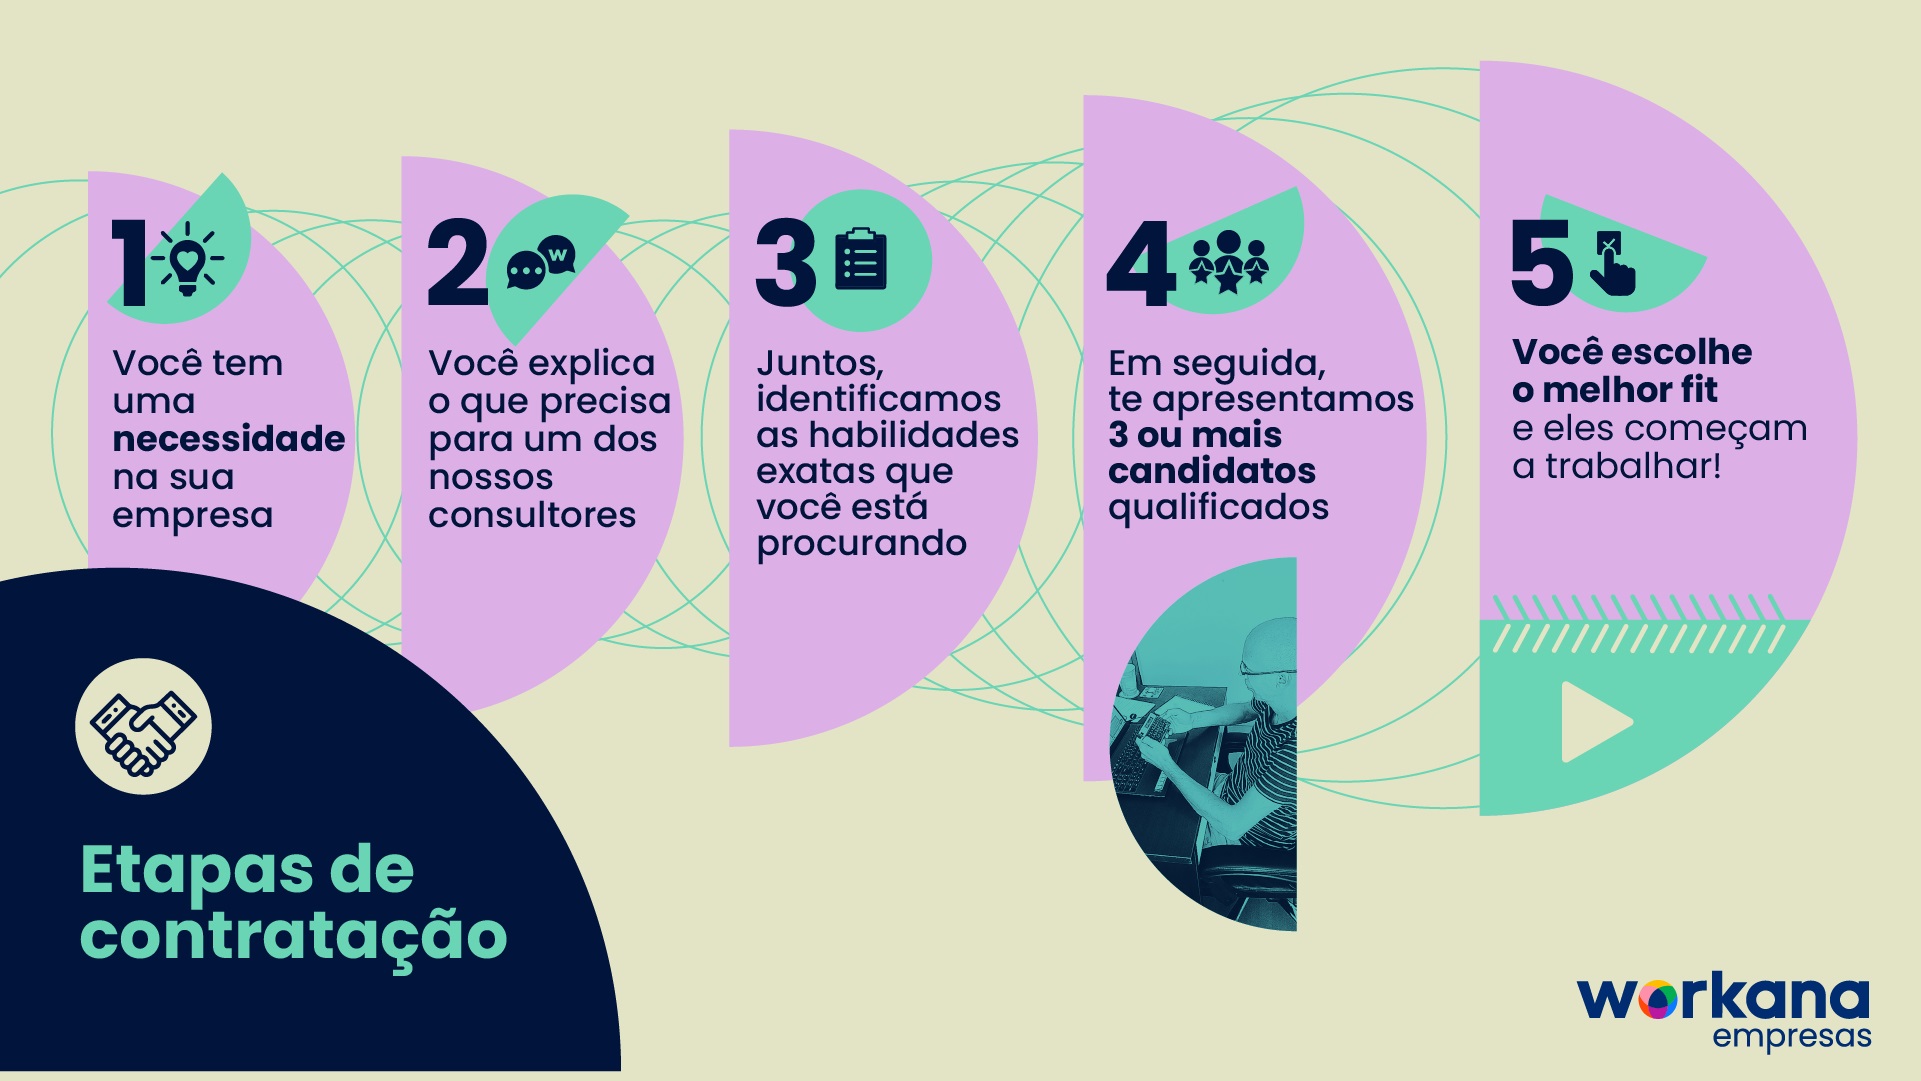 infografia workana empresas - consultoria de talentos remotos PT